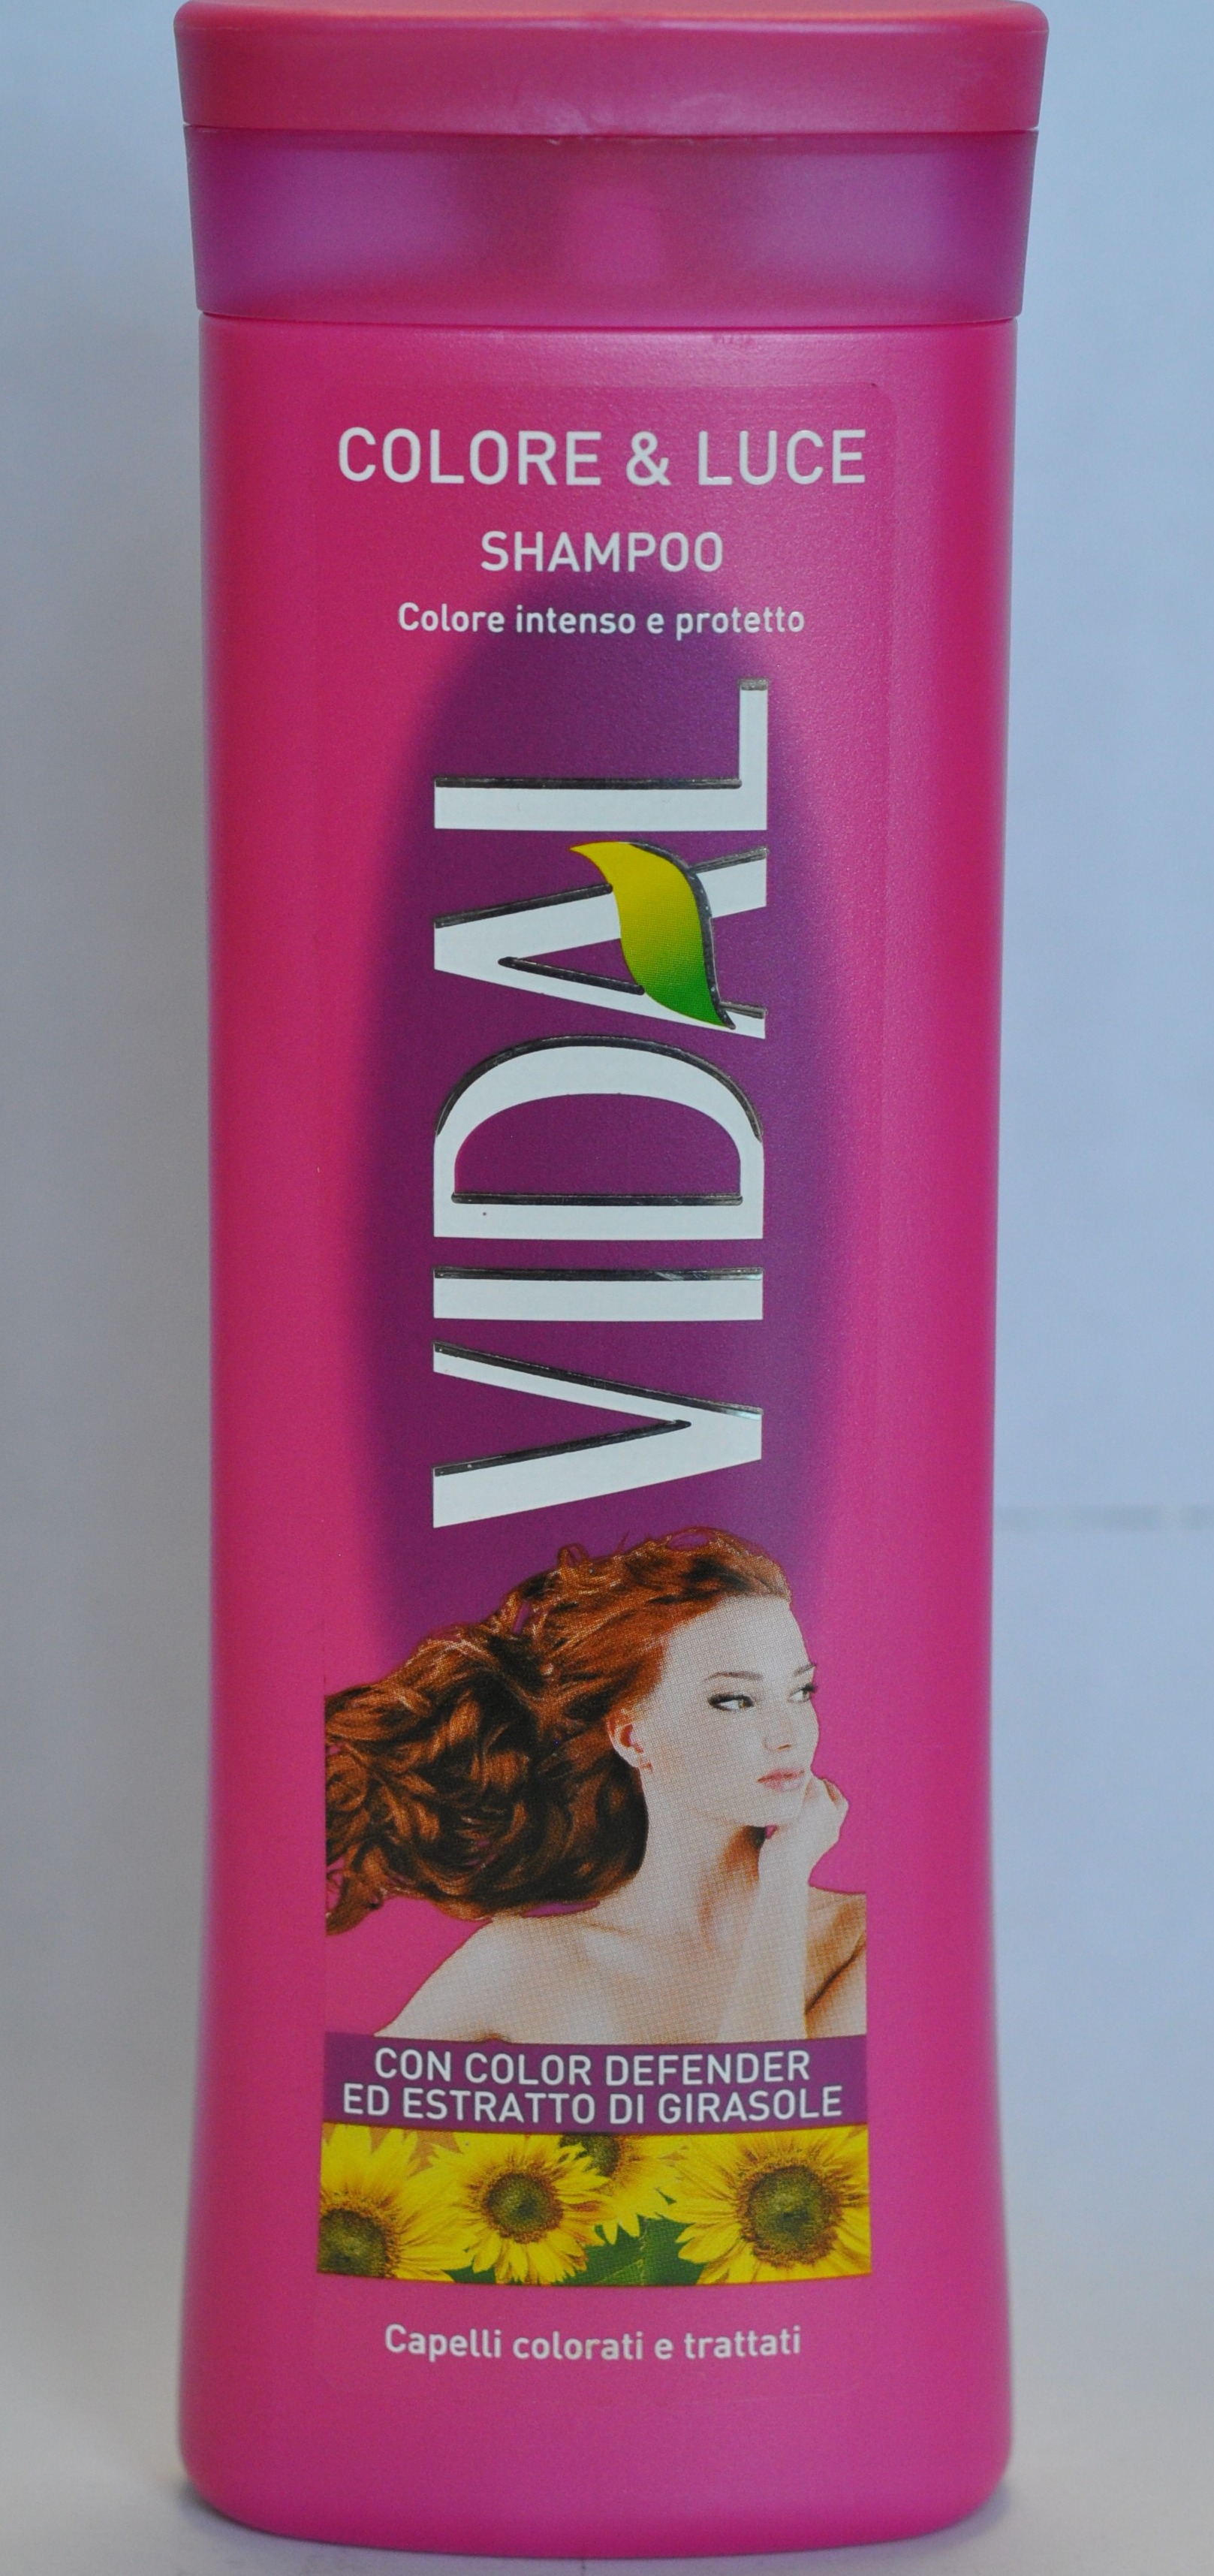 Colore & Luce Shampoo – šampón - foto výrobku